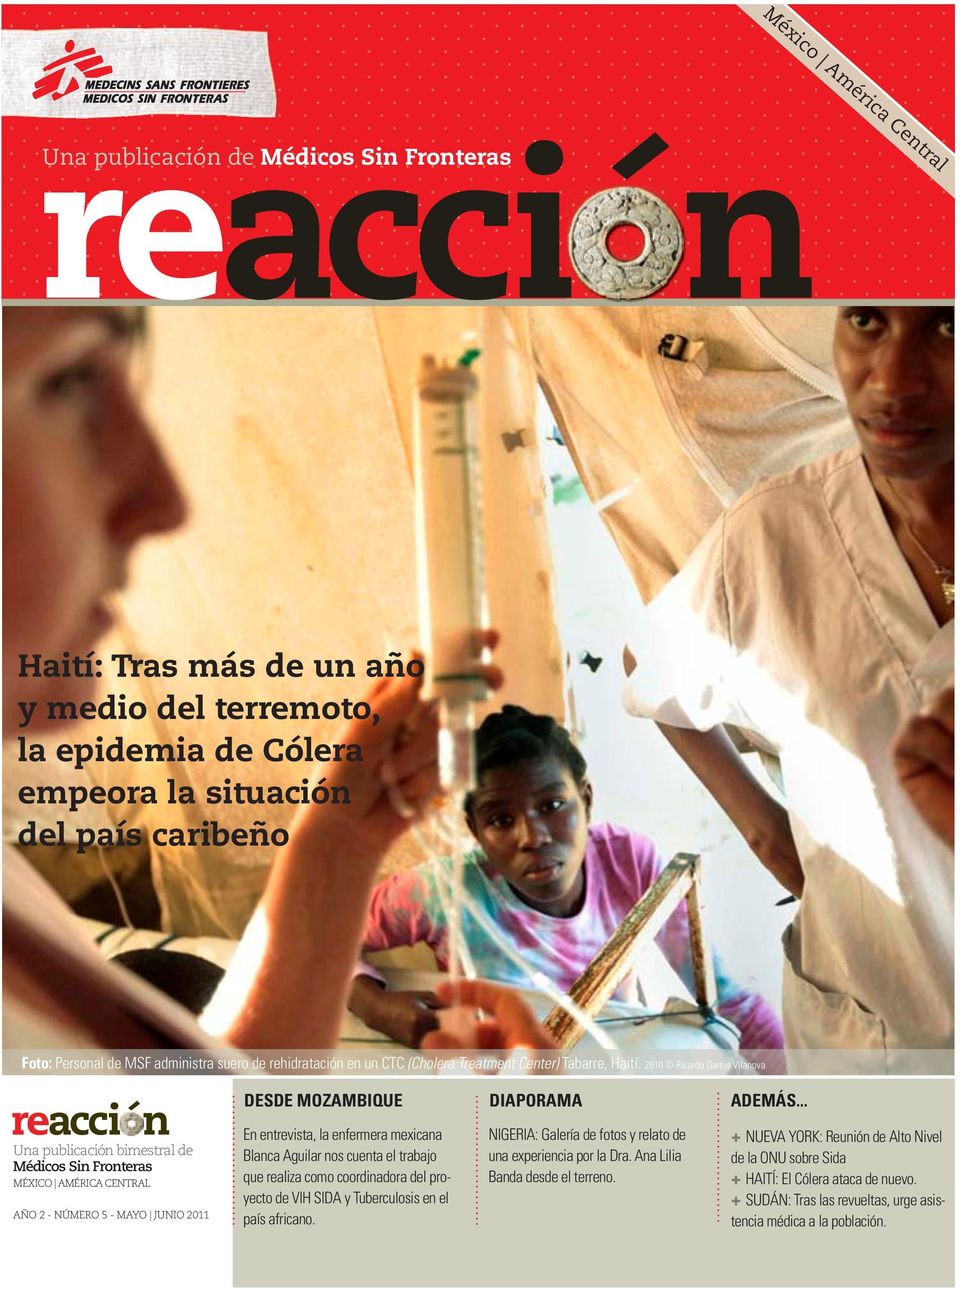 .. Una publicación bimestral de Médicos Sin Fronteras MÉXICO AMÉRICA CENTRAL AÑO 2 - NÚMERO 5 - MAYO JUNIO 2011 En entrevista, la enfermera mexicana Blanca Aguilar nos cuenta el trabajo que realiza